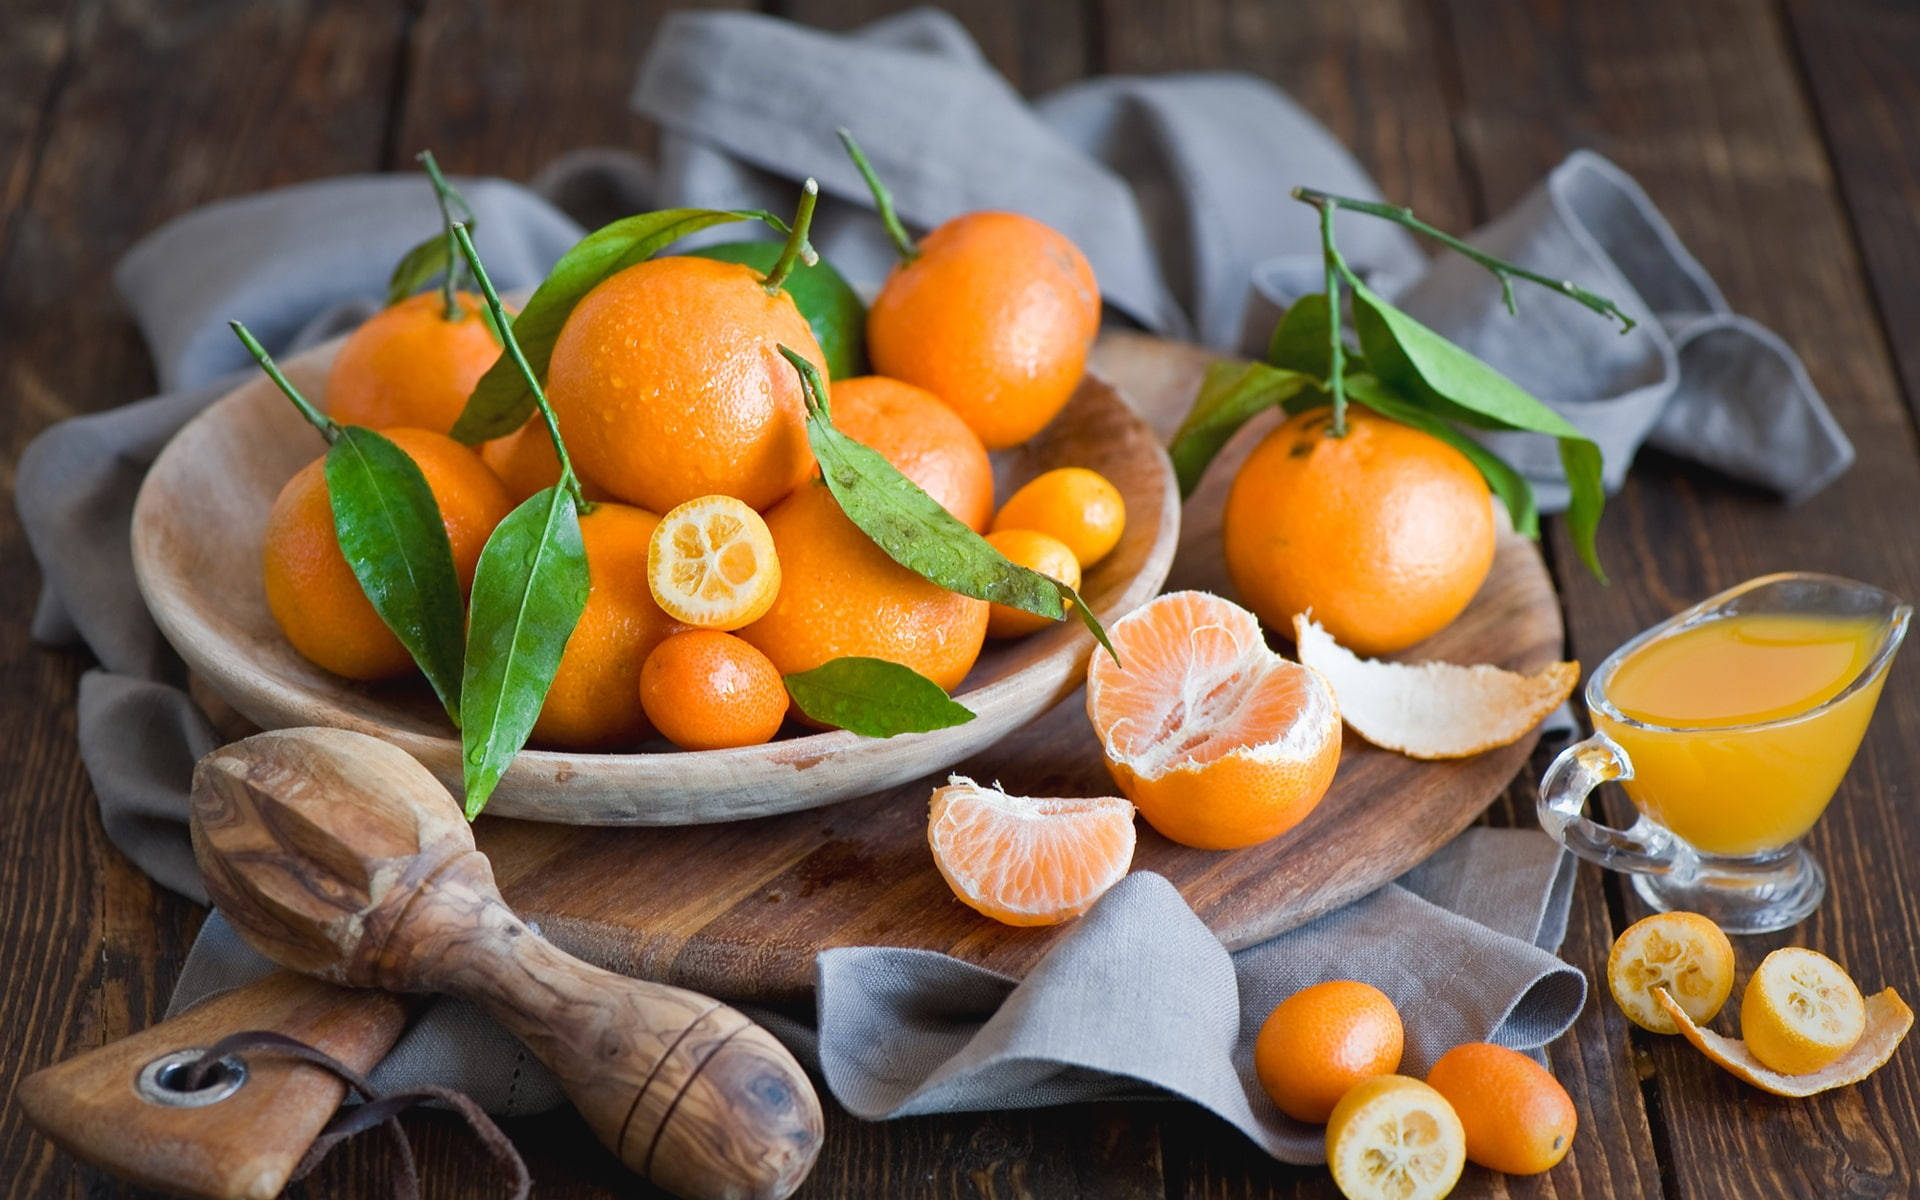 Wallpaper - Kumquat frugter og appelsiner stille livskulisse tapet Wallpaper